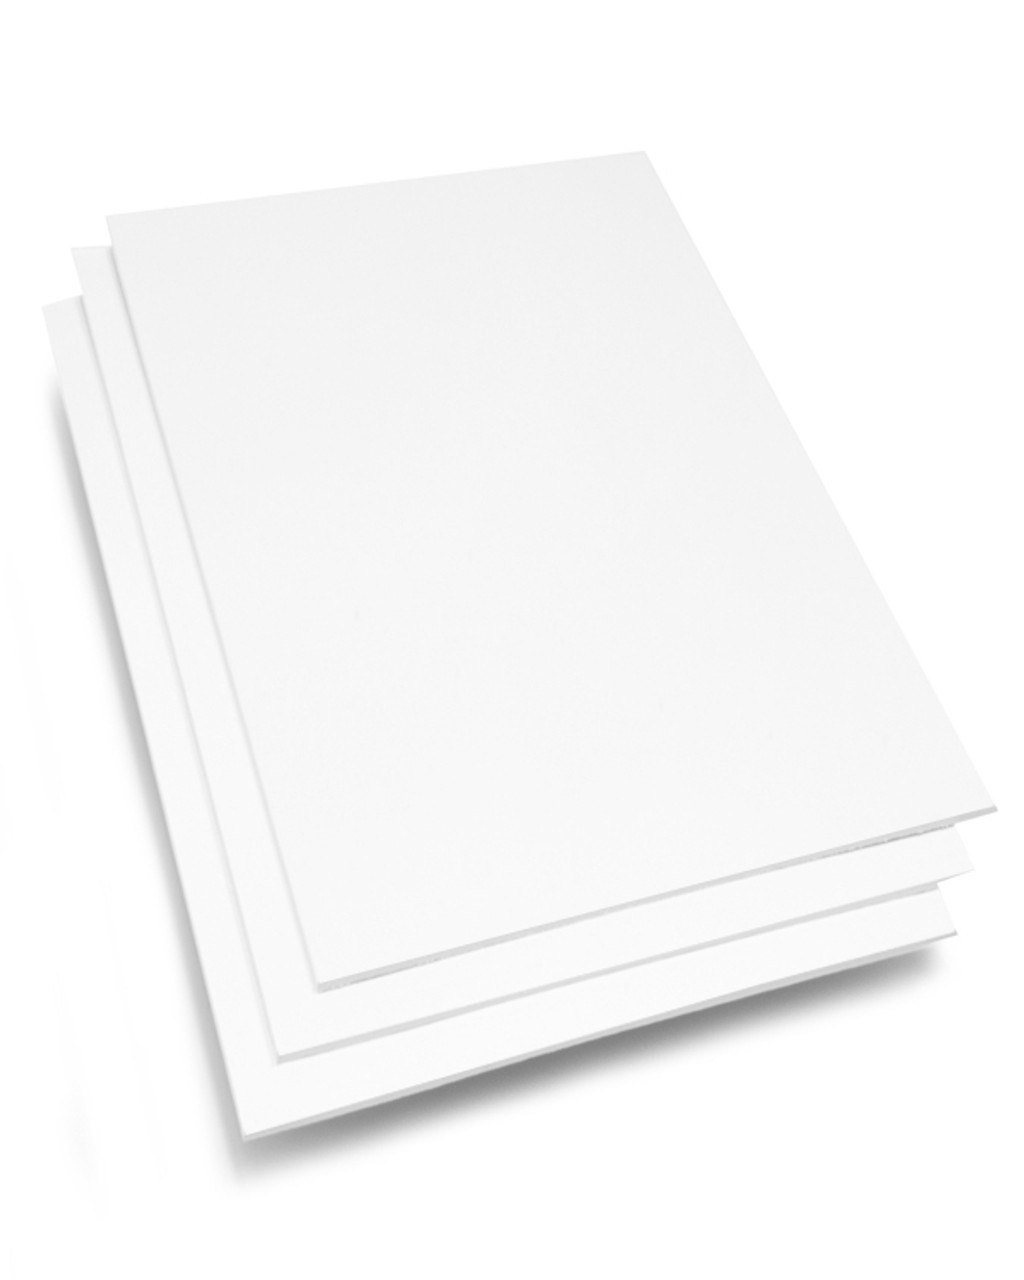 11x17 Standard White Backer Board - Shop Now